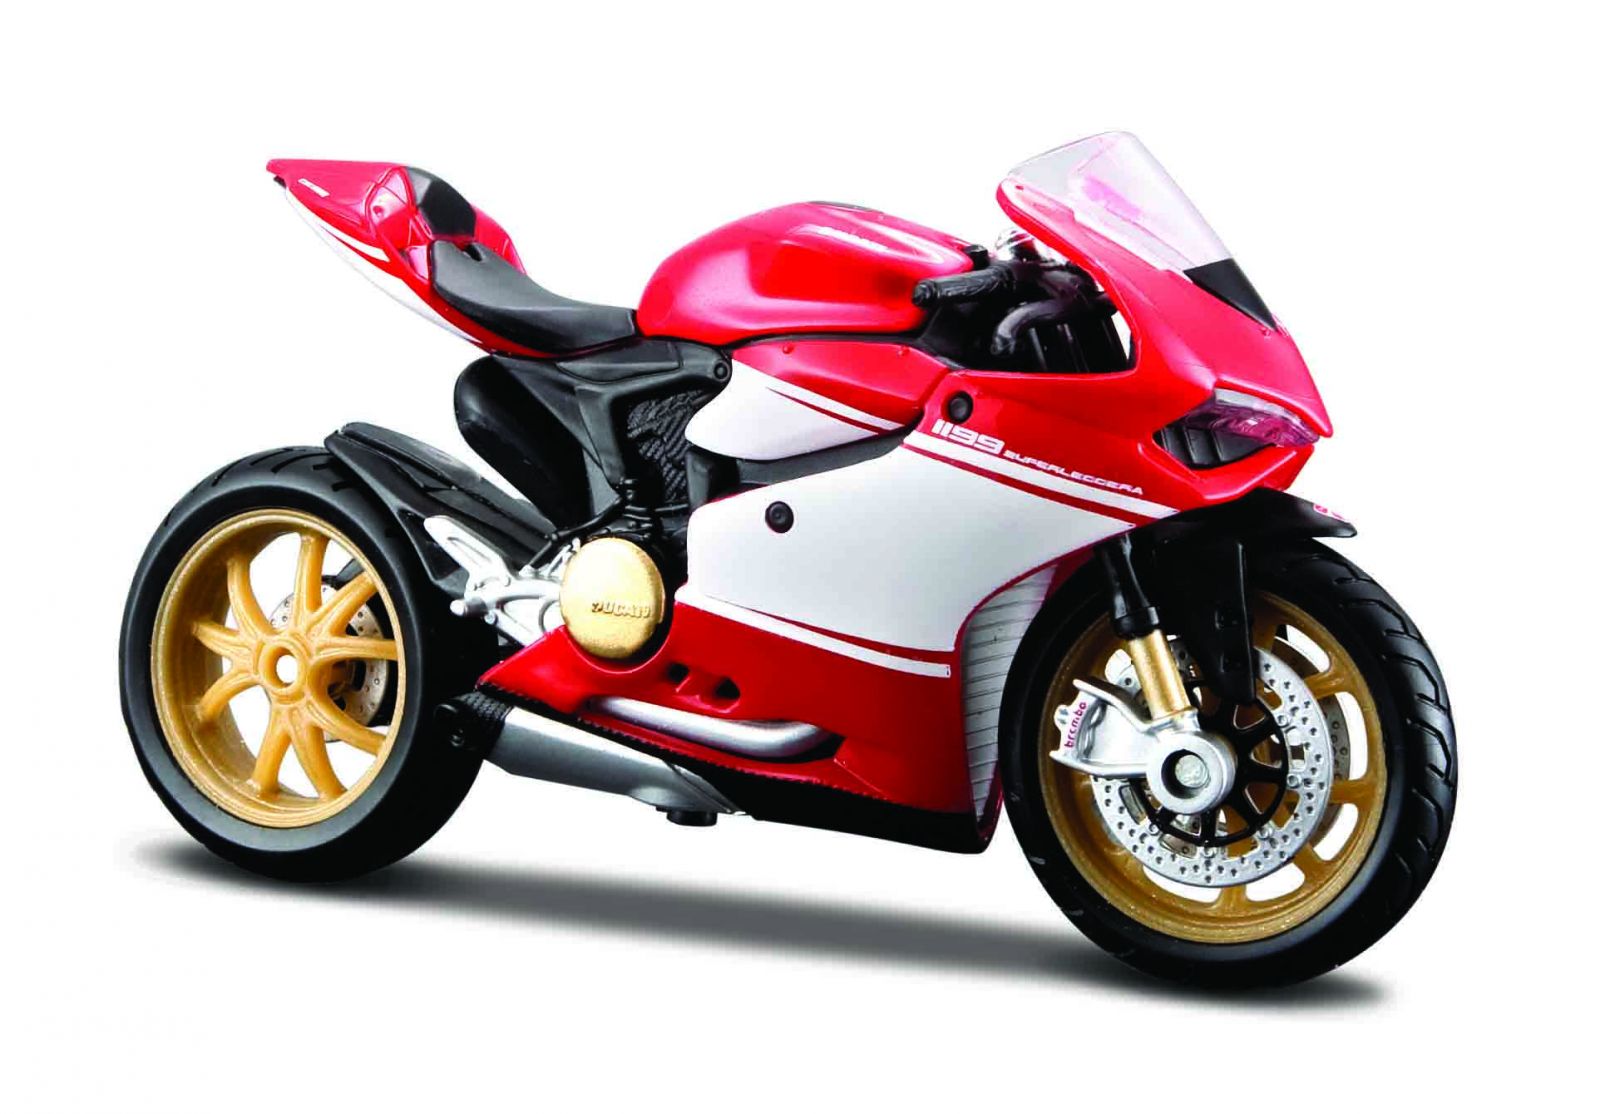 Maisto motorka na stojánku se zn. DUCATI - Ducati 1099 Superleggera 1:18 červeno bílá